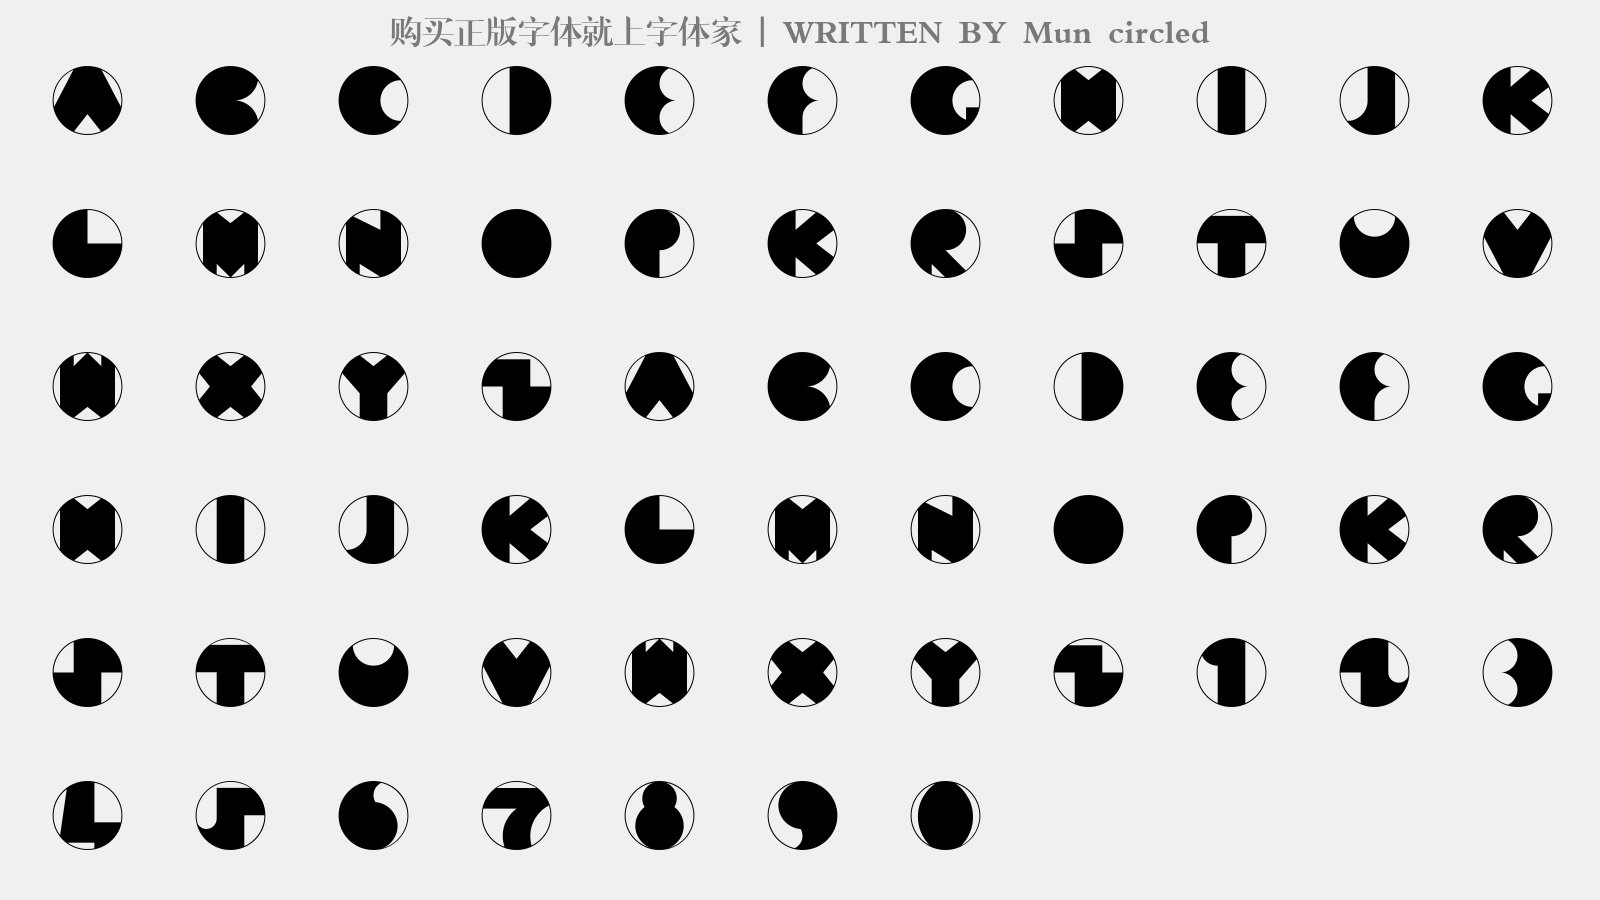 Mun circled - 大写字母/小写字母/数字